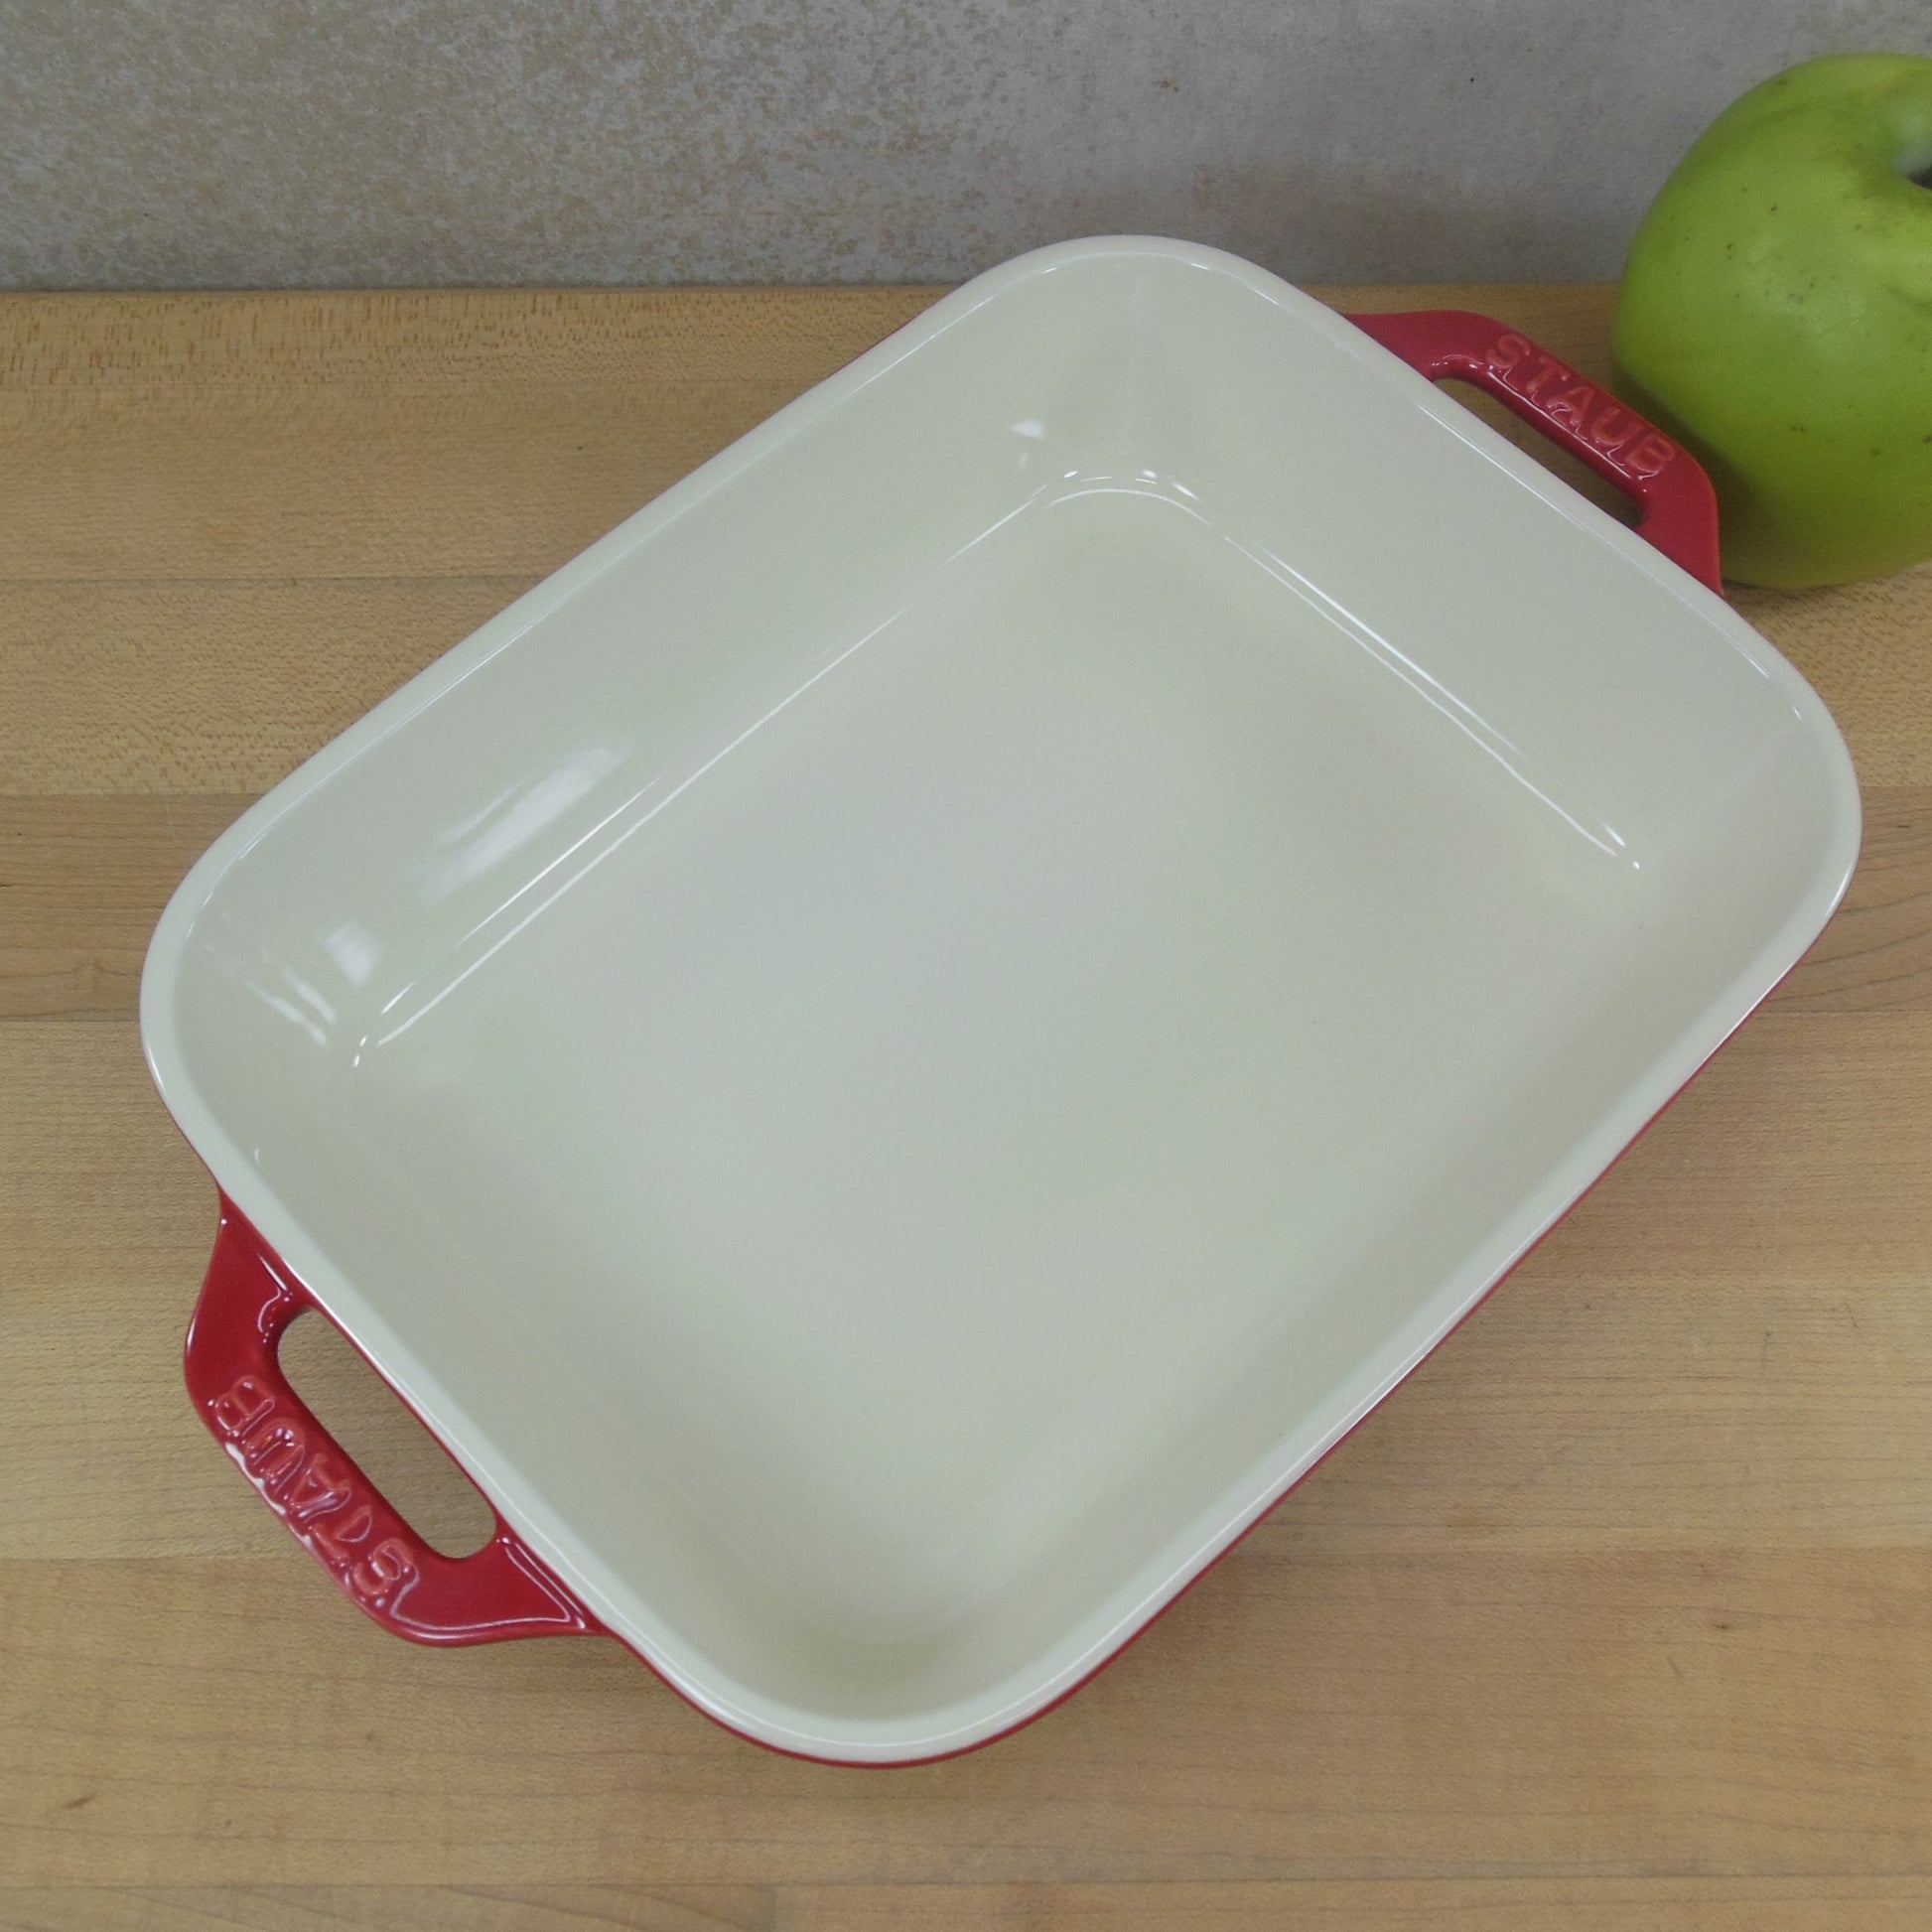 Staub Red Ceramic Rectangular Baking Dish 6.5" x 8.5" Unused Estate Item